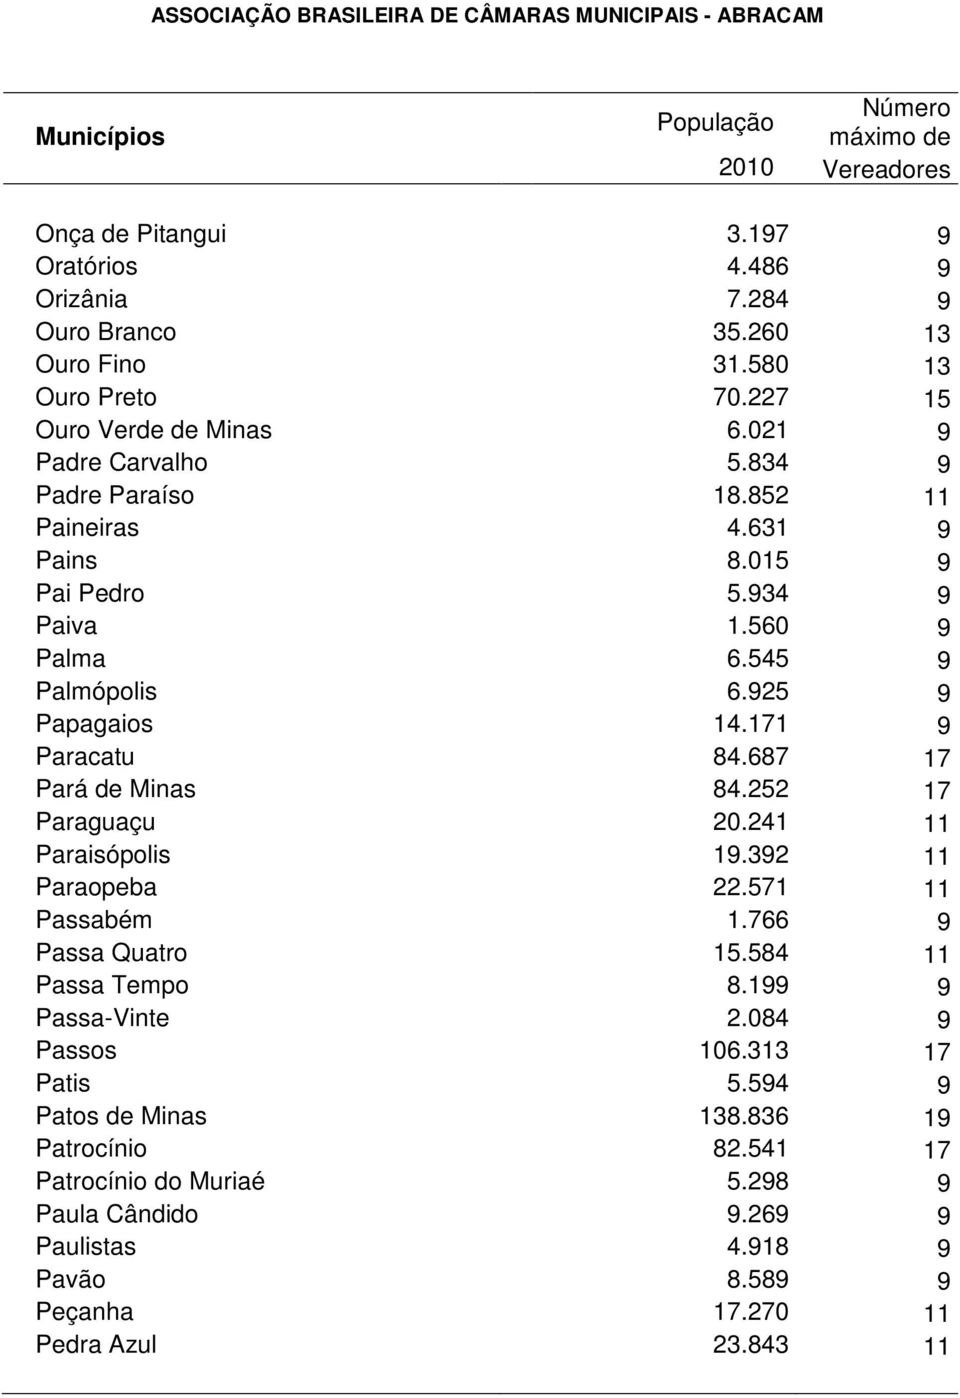 687 17 Pará de Minas 84.252 17 Paraguaçu 20.241 11 Paraisópolis 19.392 11 Paraopeba 22.571 11 Passabém 1.766 9 Passa Quatro 15.584 11 Passa Tempo 8.199 9 Passa-Vinte 2.